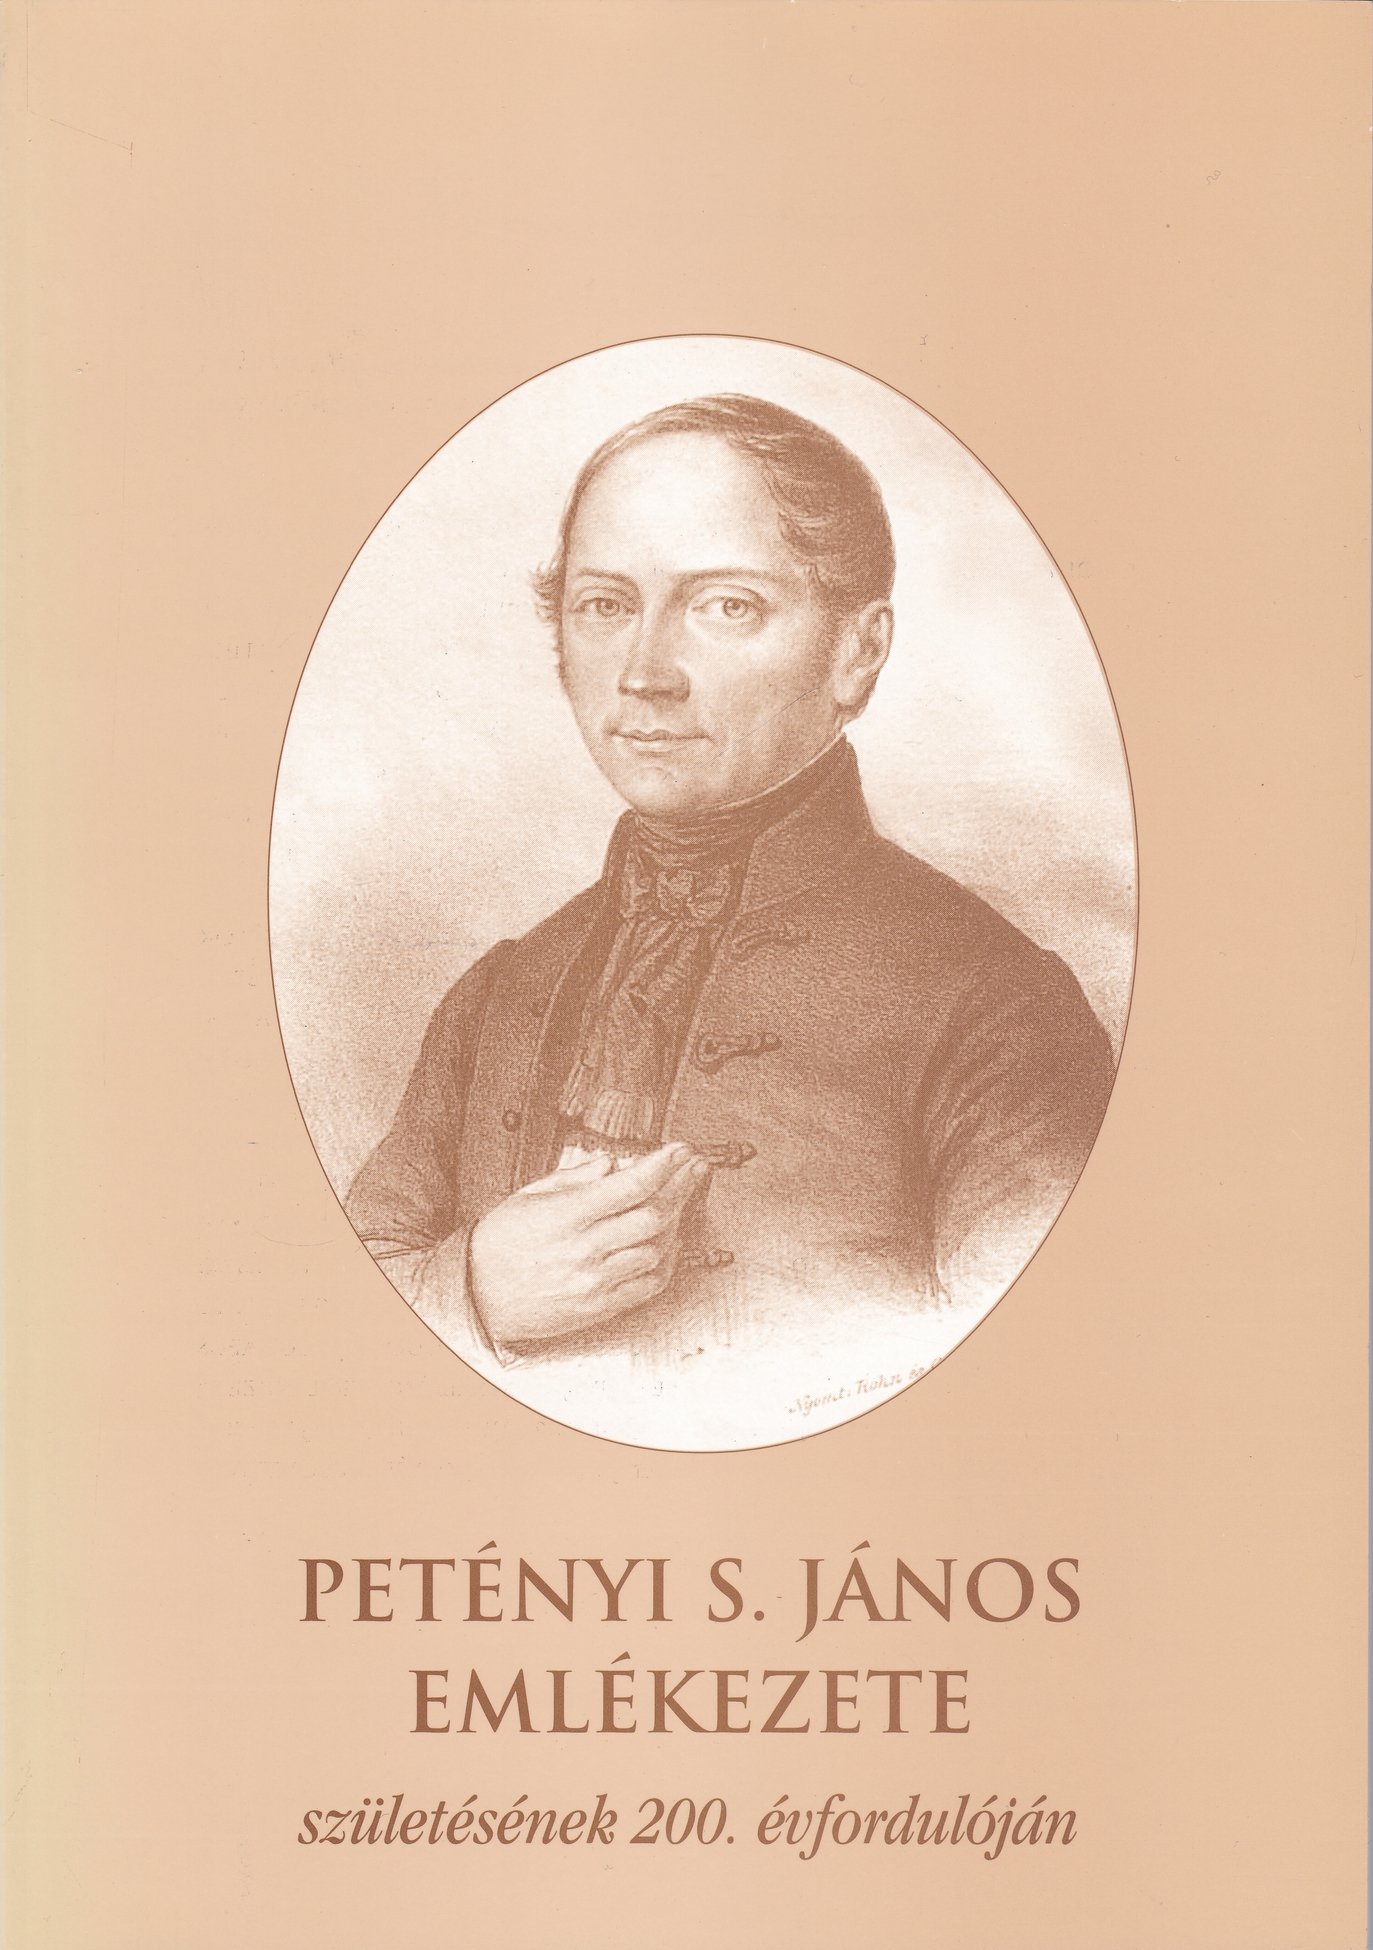 Petényi Salamon János emlékezete születésének 200. évfordulóján (Rippl-Rónai Múzeum CC BY-NC-ND)